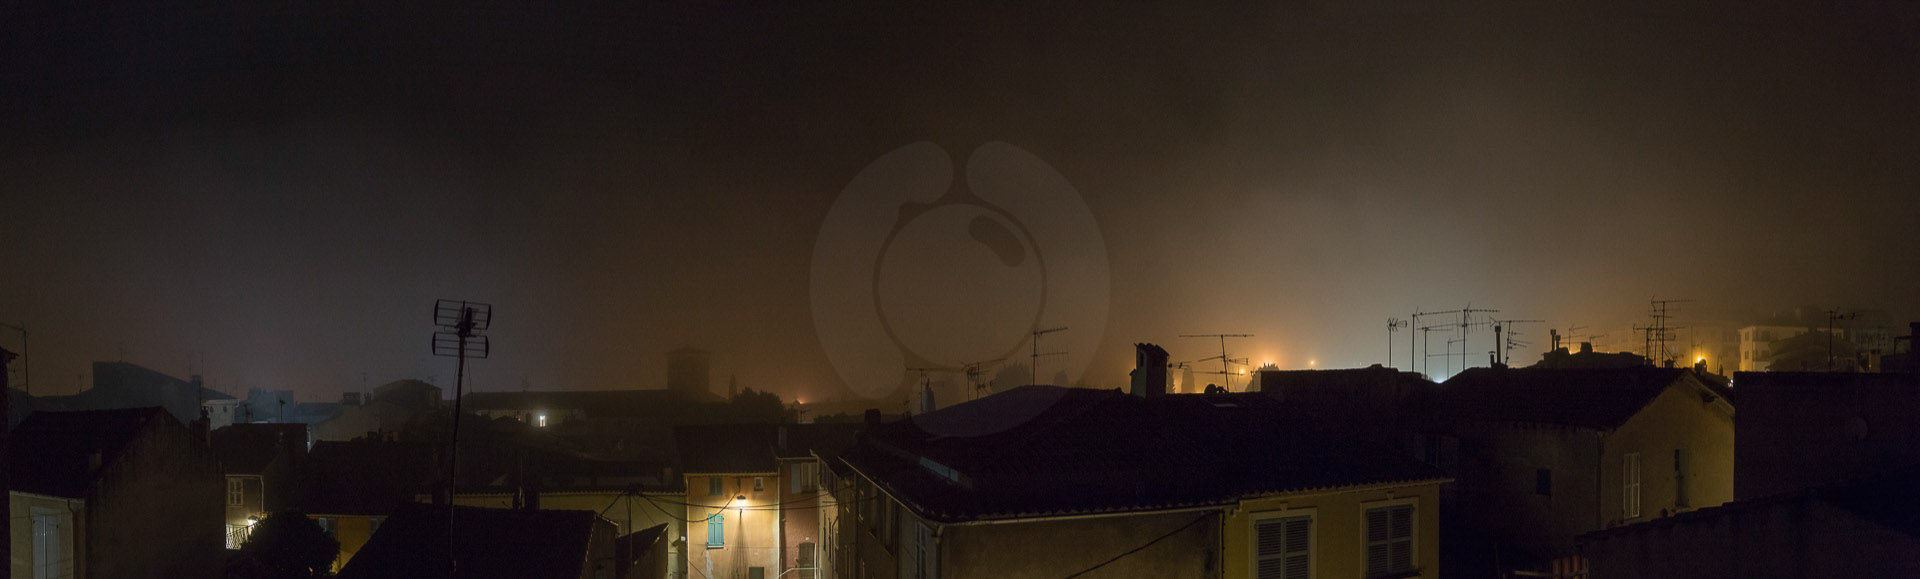 19-brume-la-nuit-sur-les-toits-juin-2016-pano-1920-px